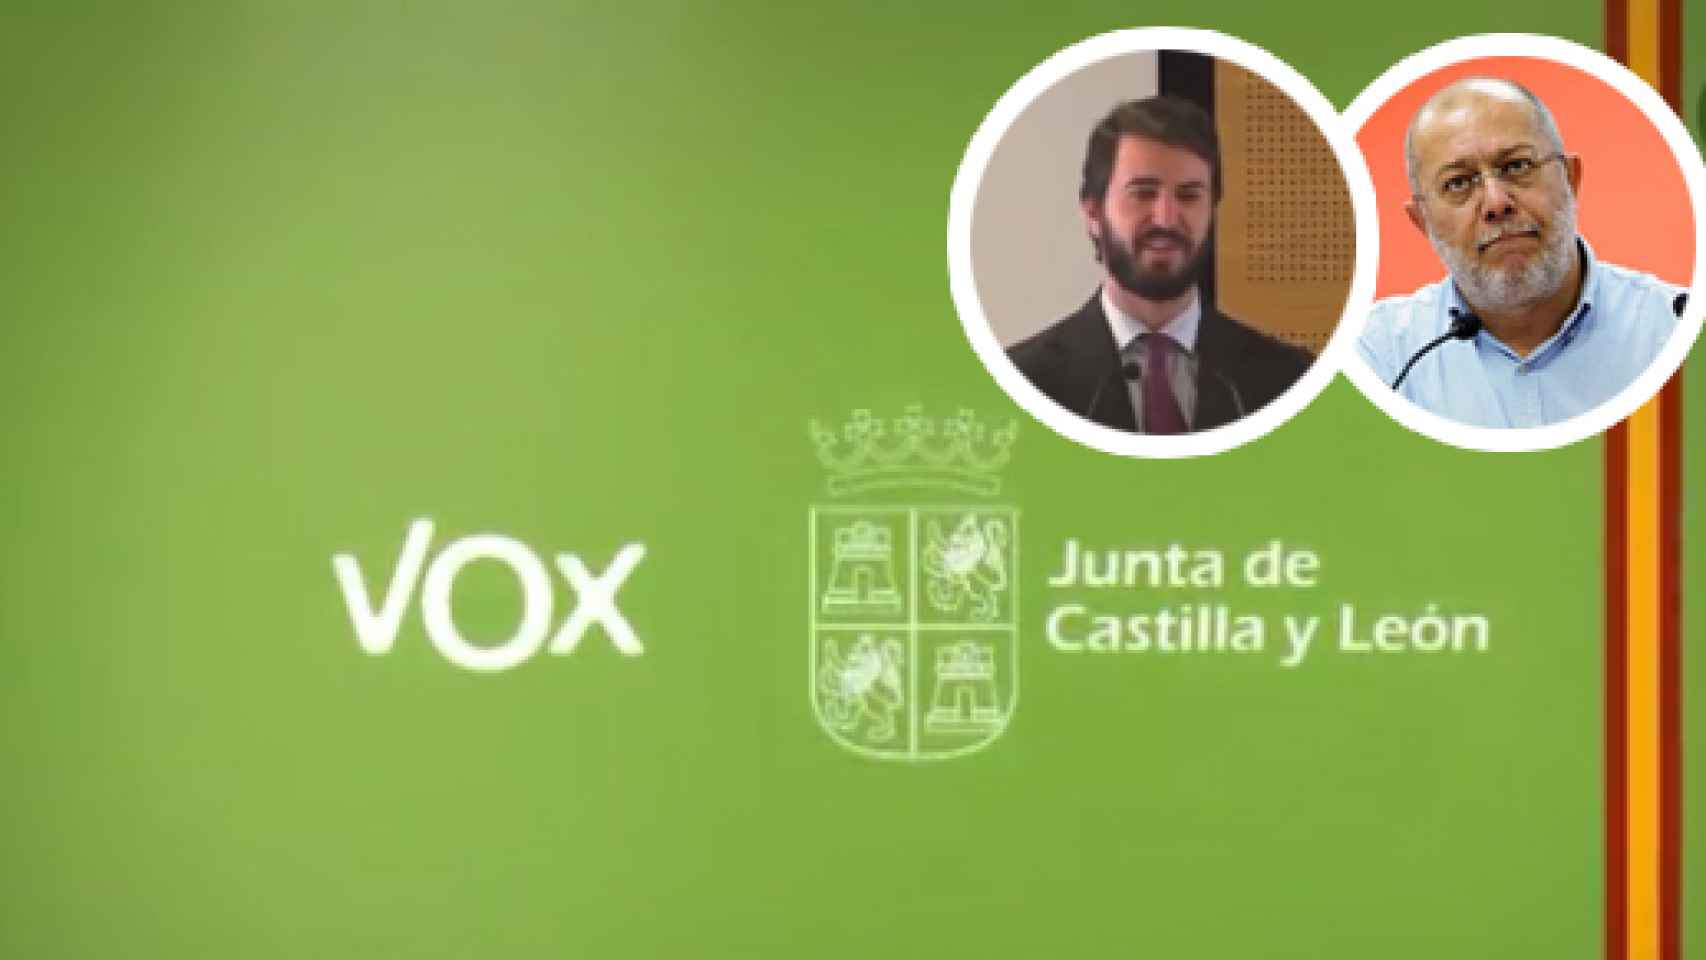 Montaje donde aparecen los logos de Vox y la Junta de Castilla y León que cierran el vídeo y las imágenes de García-Gallardo e Igea, enfrentados por dicho contenido